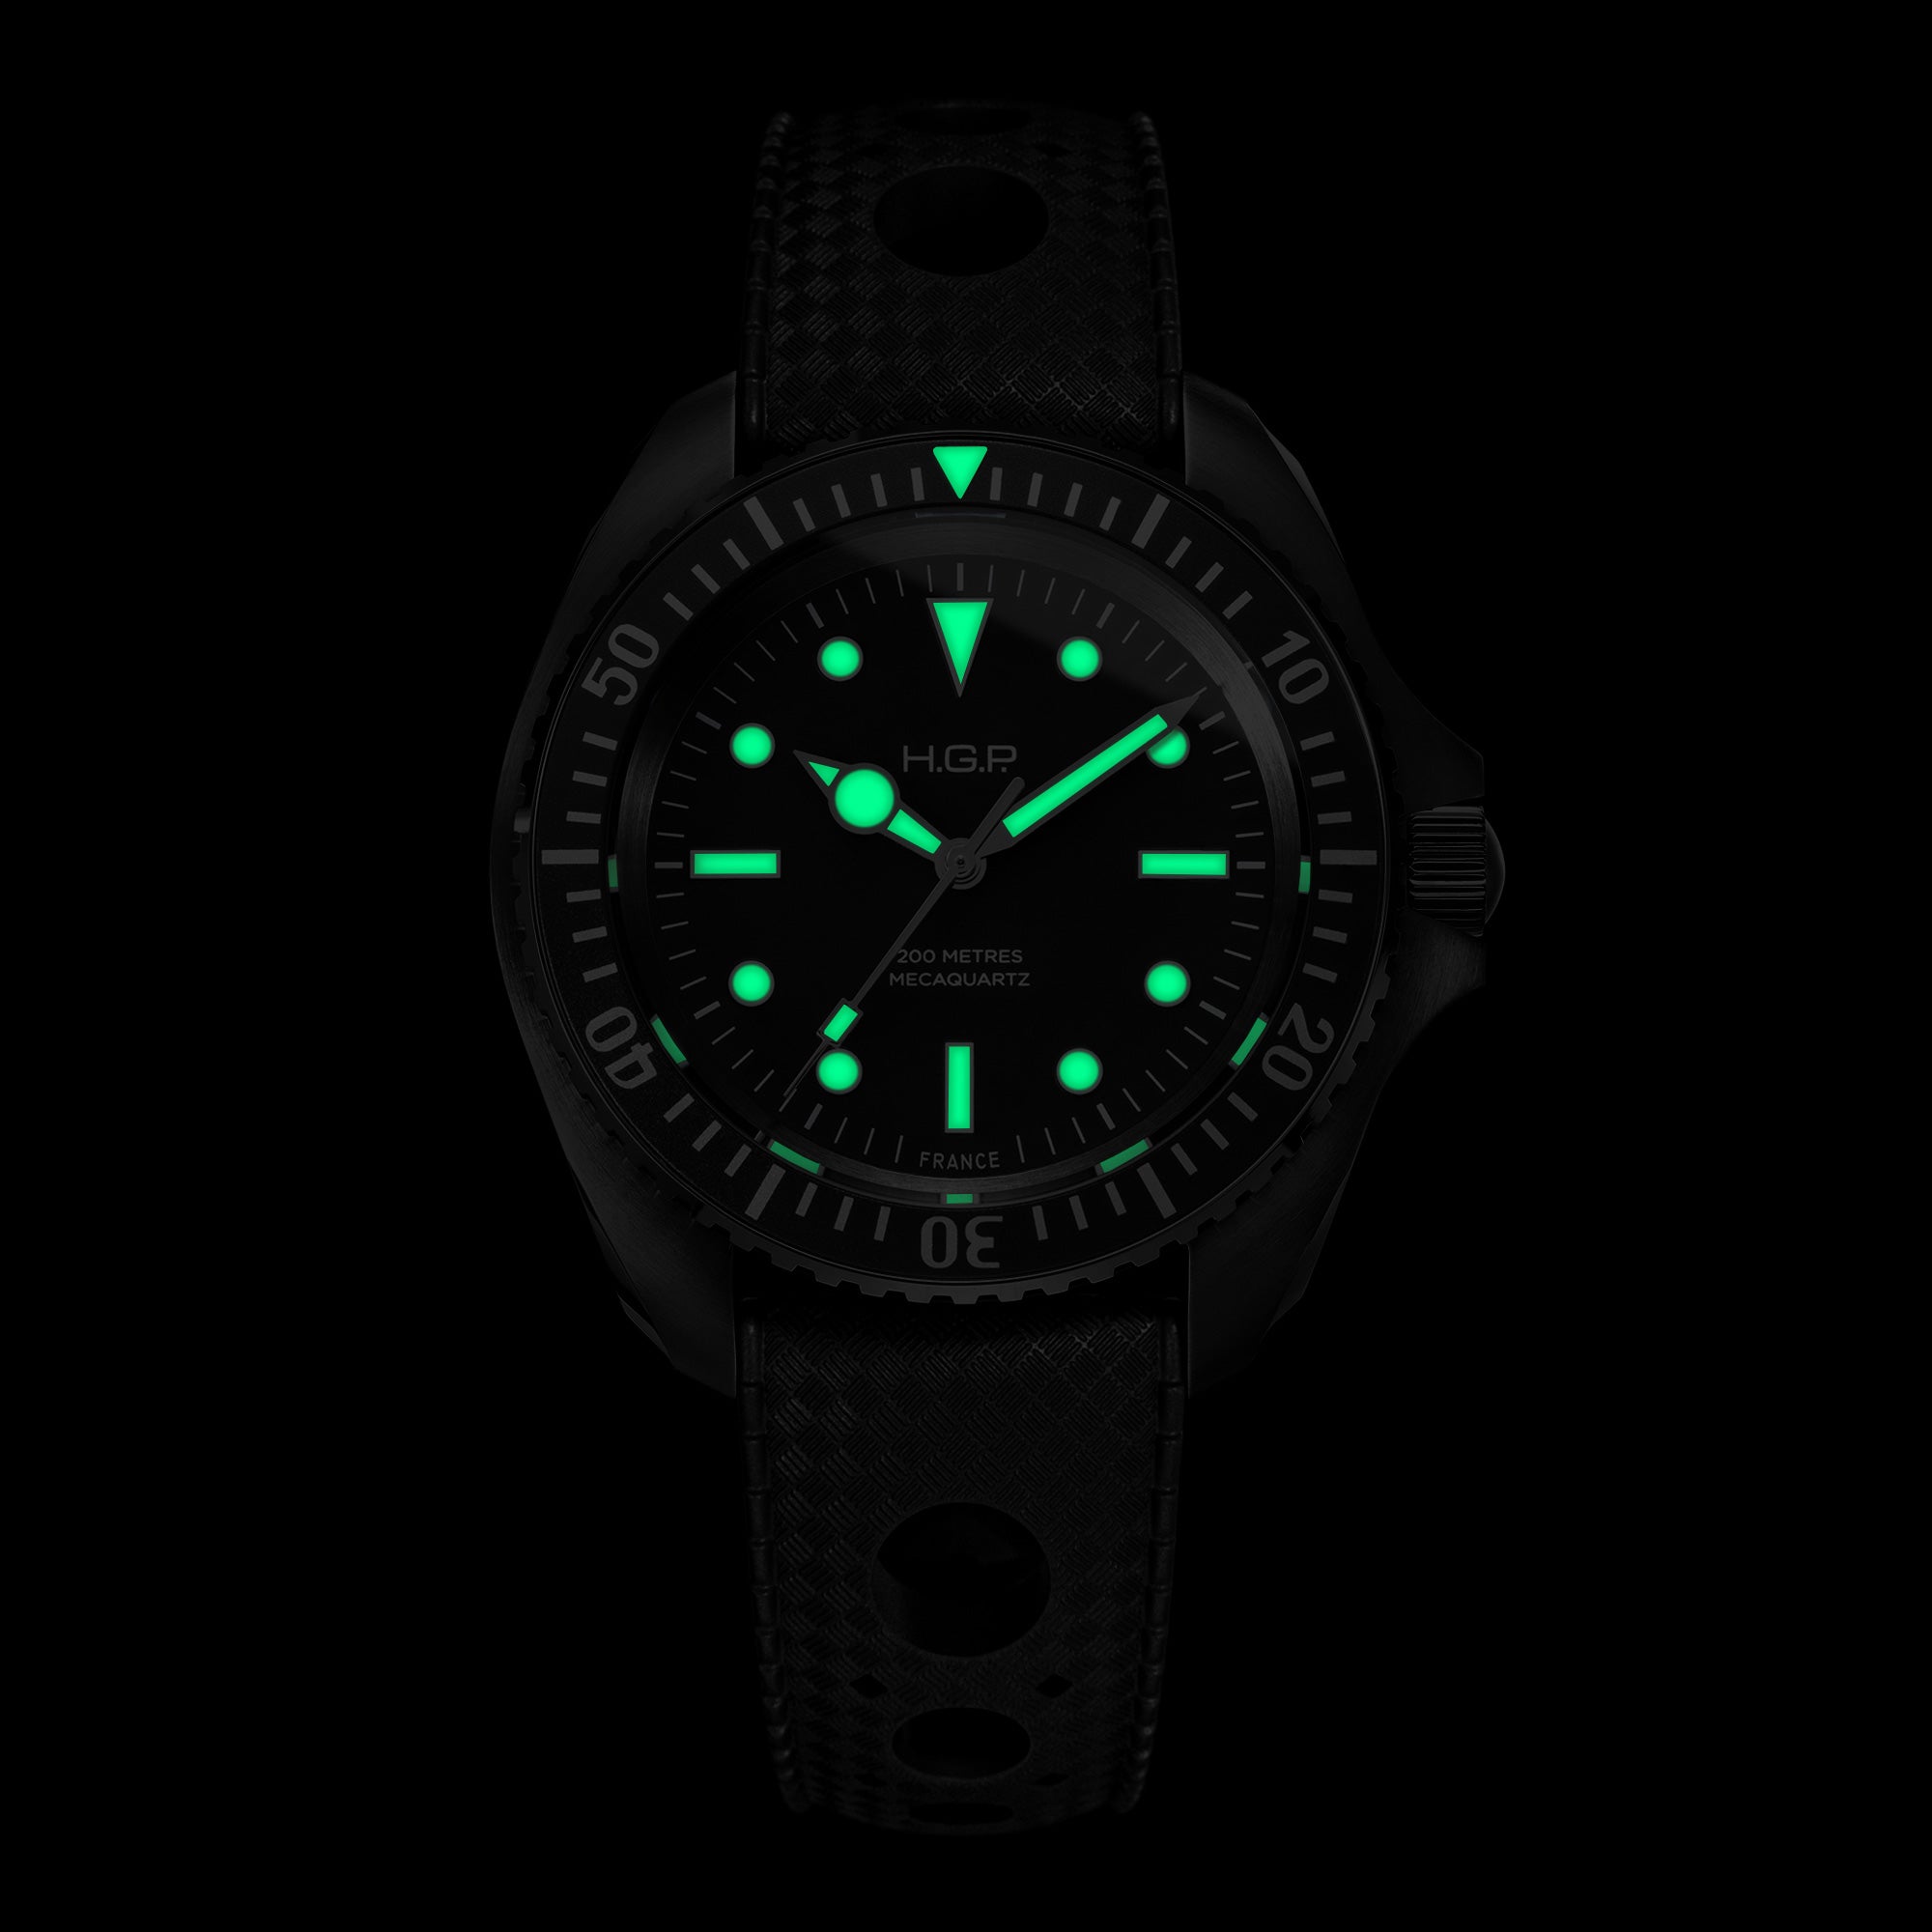 Diver 200M Mecaquartz Diving Watch - Black PVD